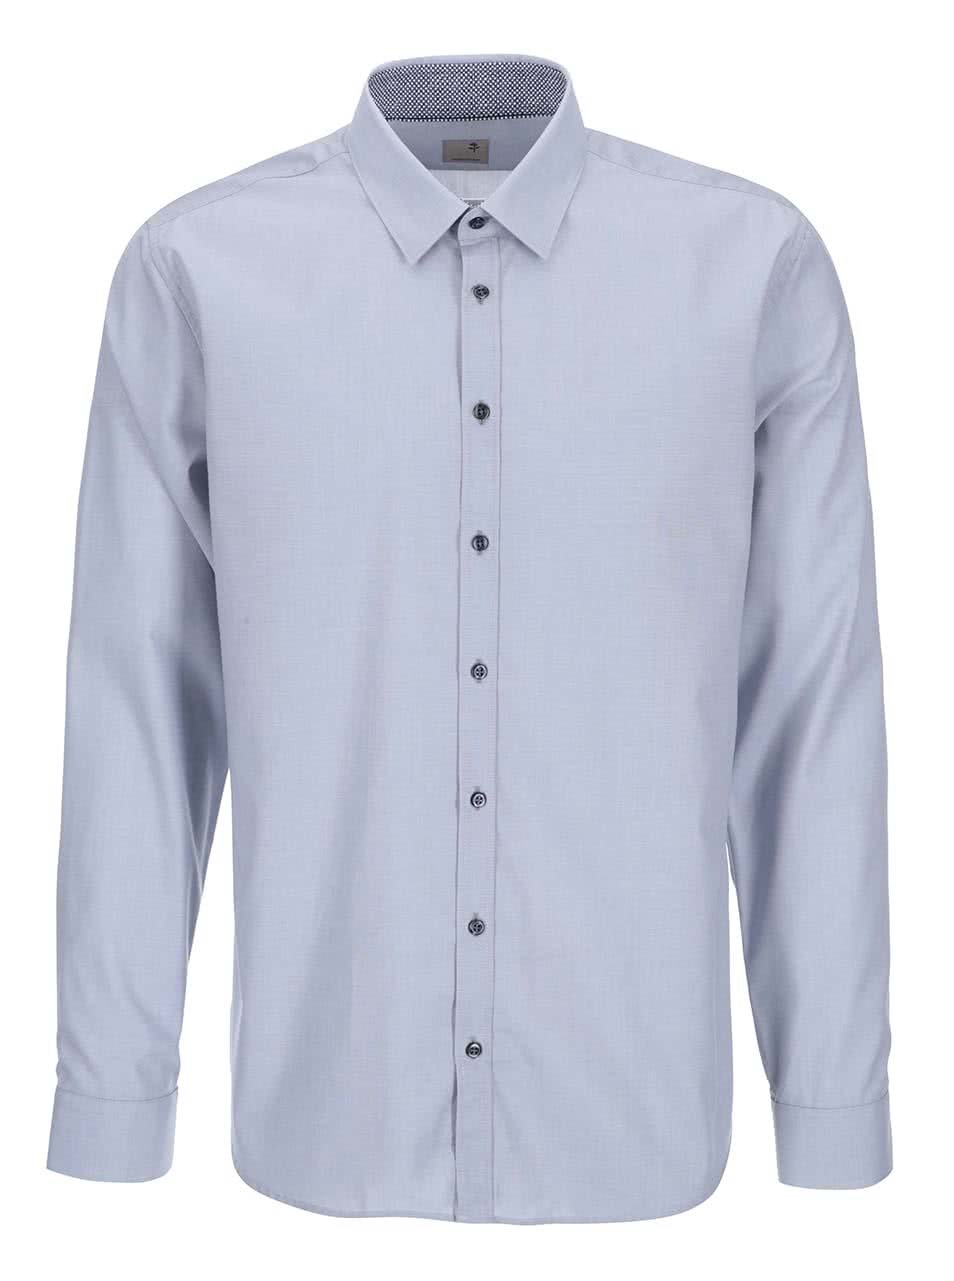 Modrošedá košile s jemným vzorem Seidensticker Modern Kent Patch